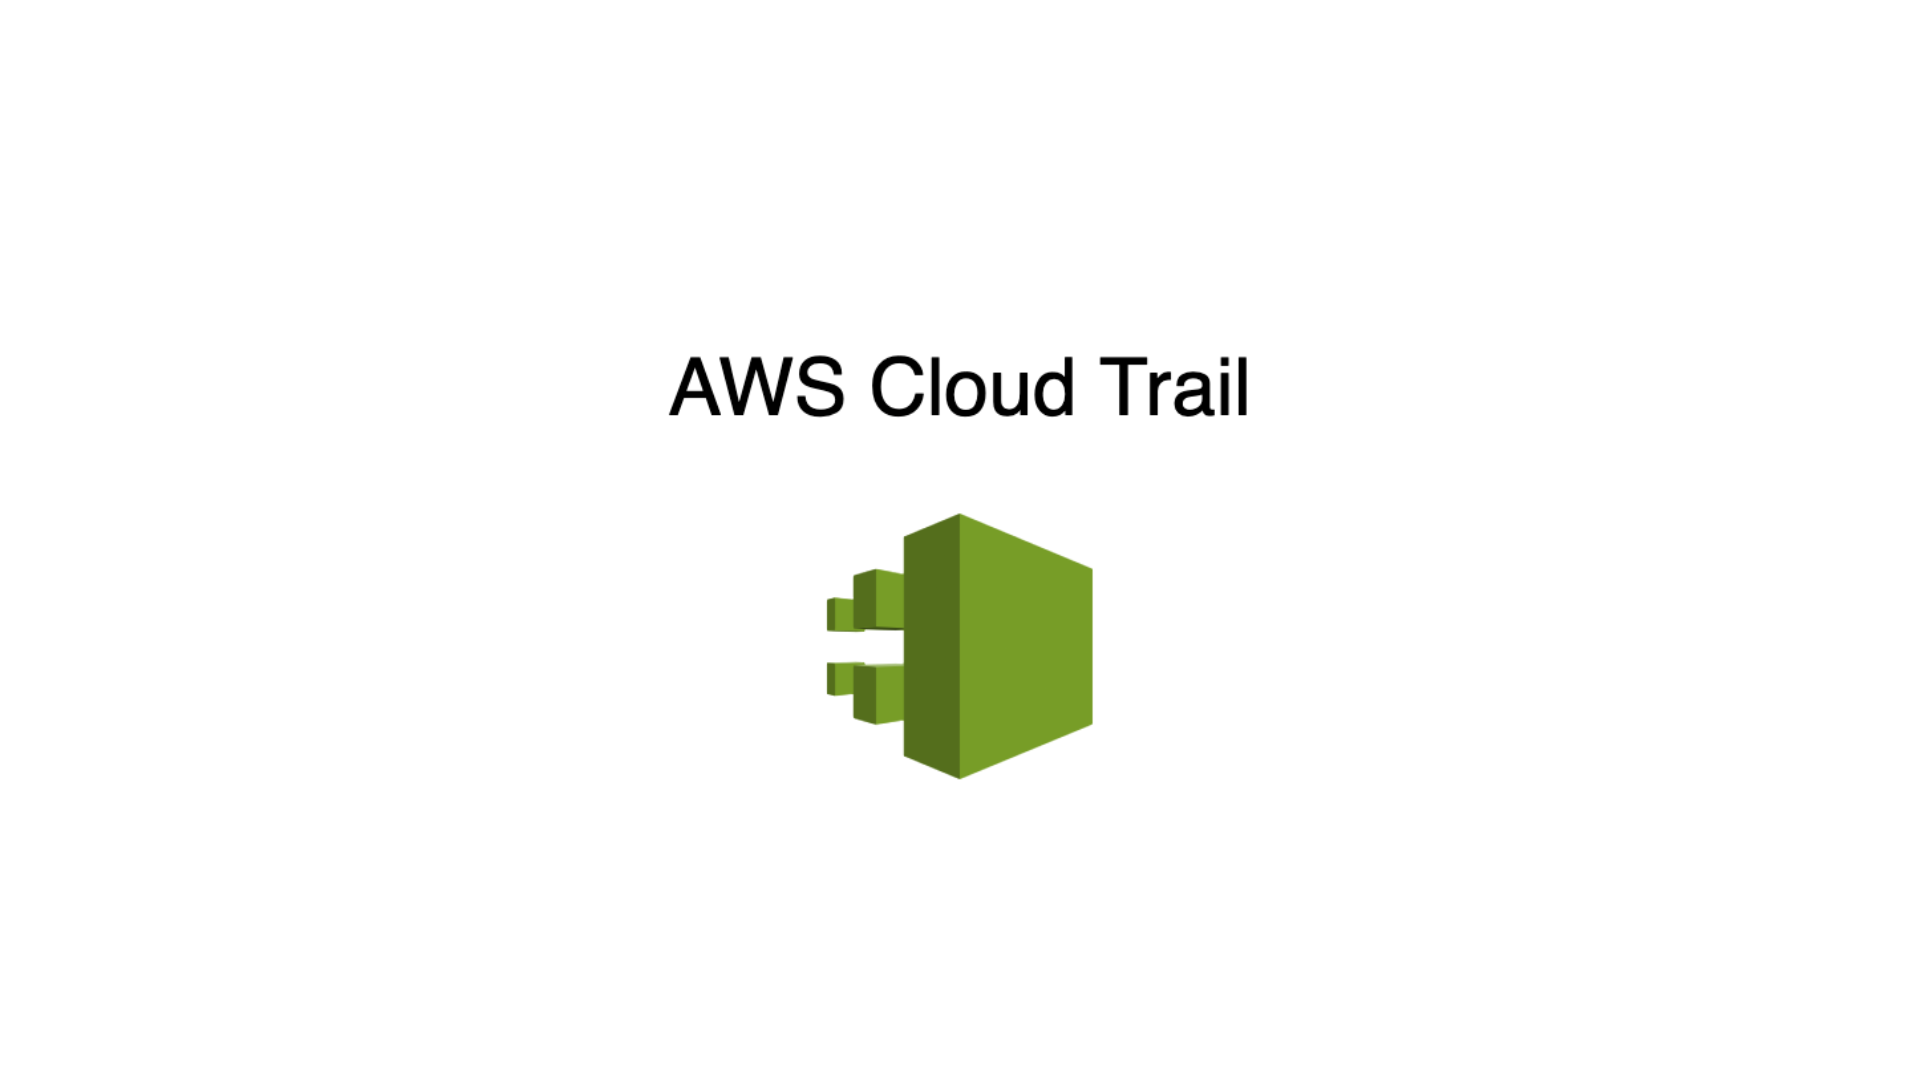 Basics of AWS IAM: How to setup a Cloud Trail?